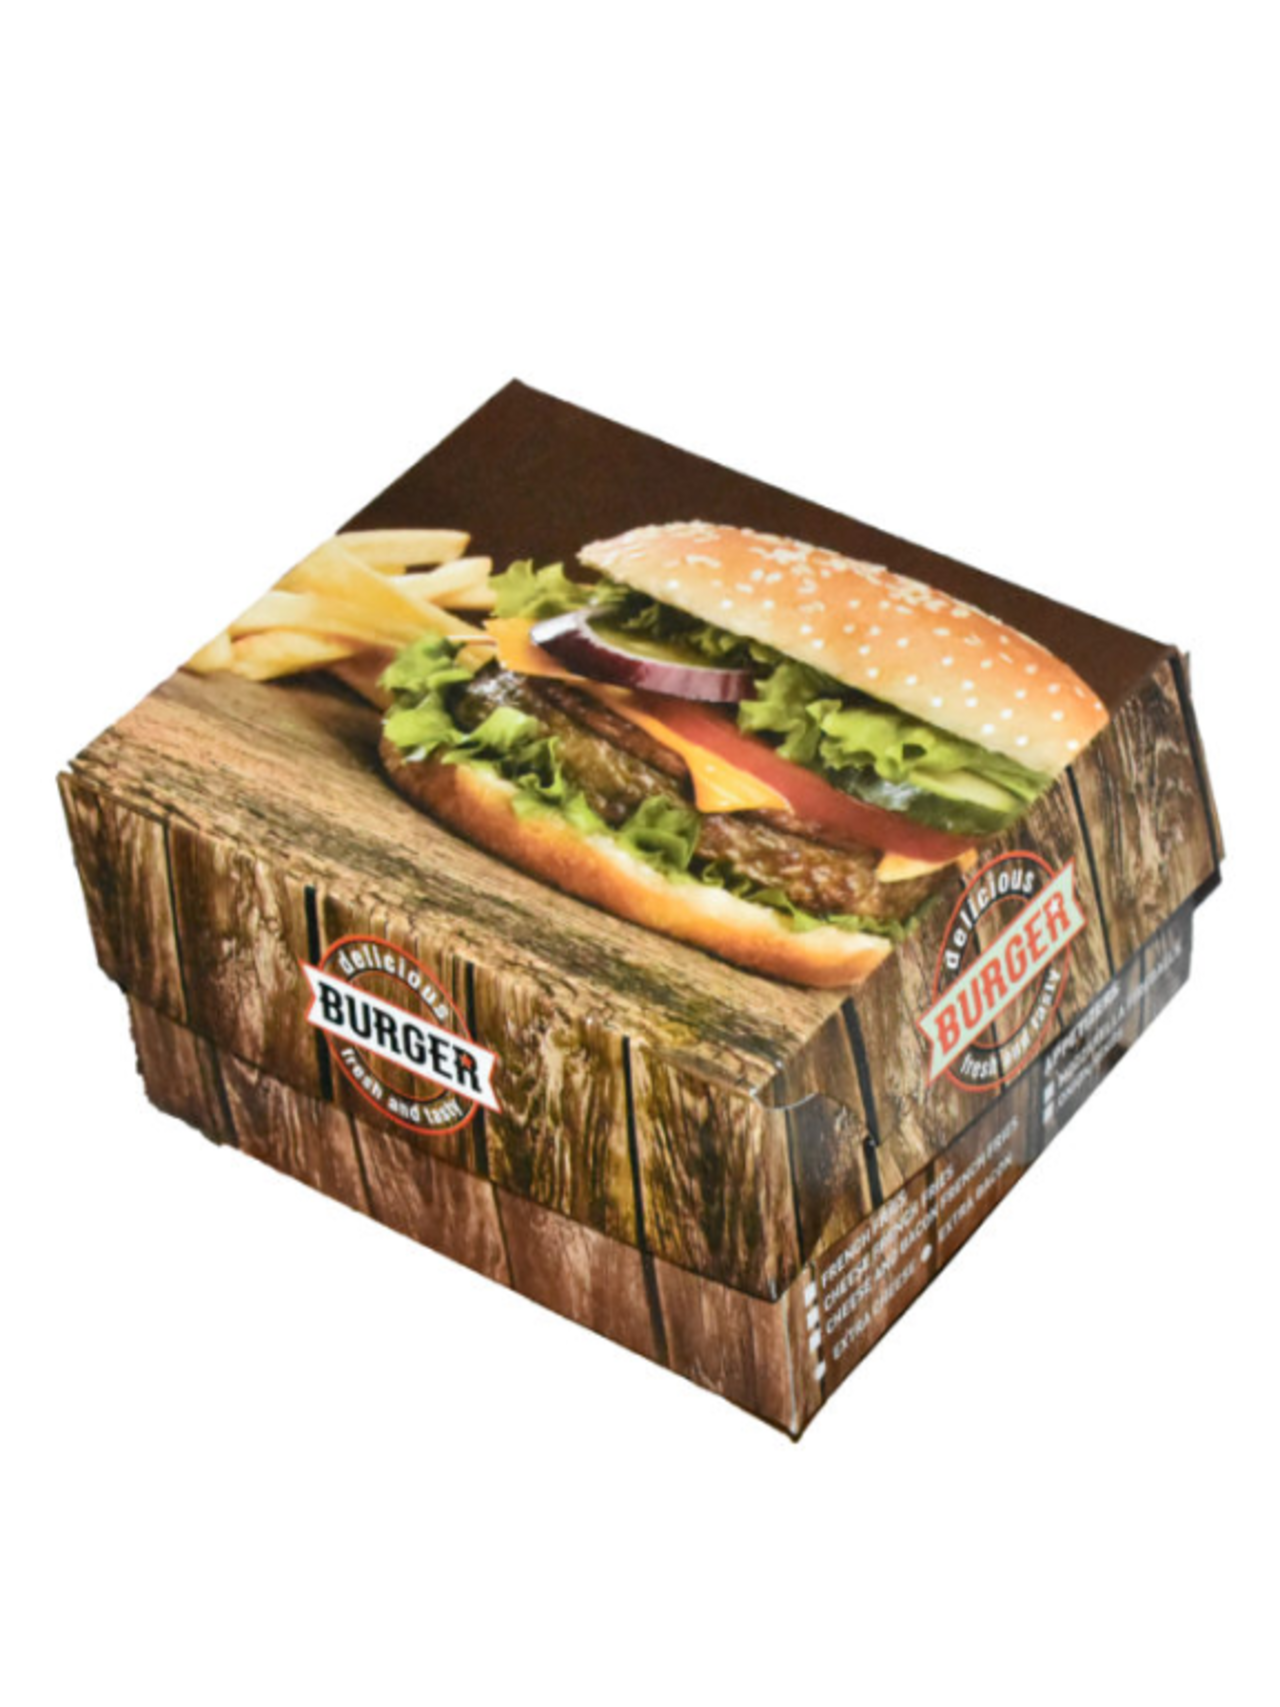 Κουτιά Burger - Club Sandwich